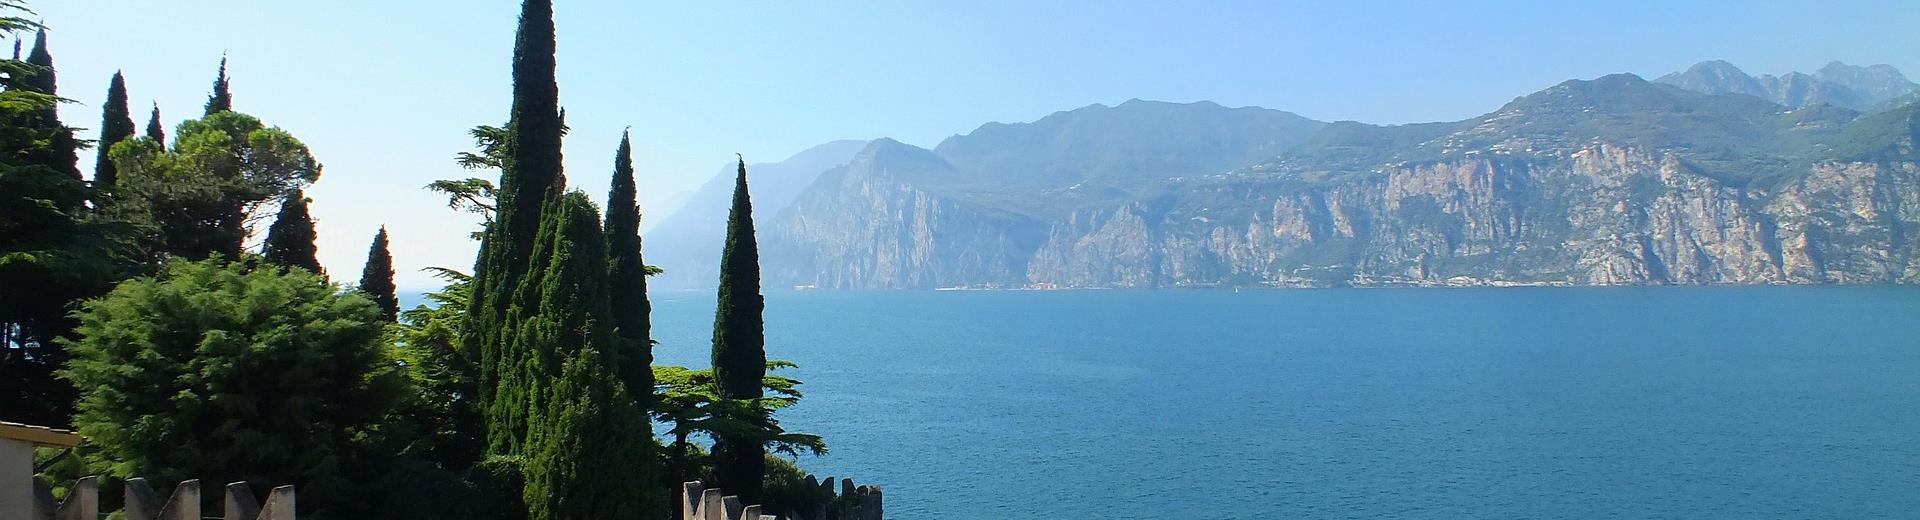 Best Western Hotel Turismo, nahe Gardasee